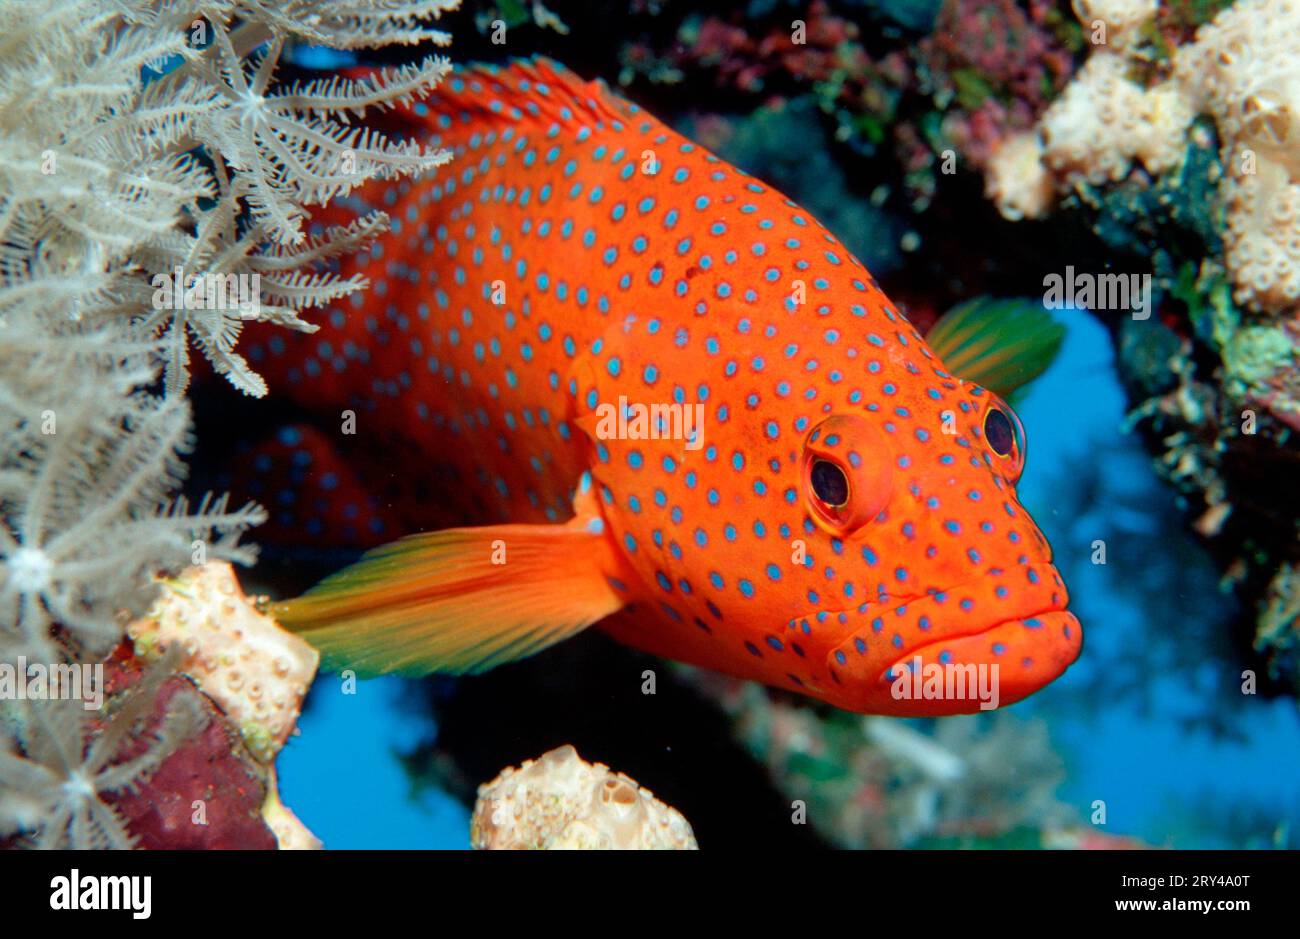 Coral Grouper, Vermillion seabass (Cephalopholis miniata) Andere Tiere, other animals, Fische, fish, Unterwasser, under water, Indischer Ozean Stock Photo